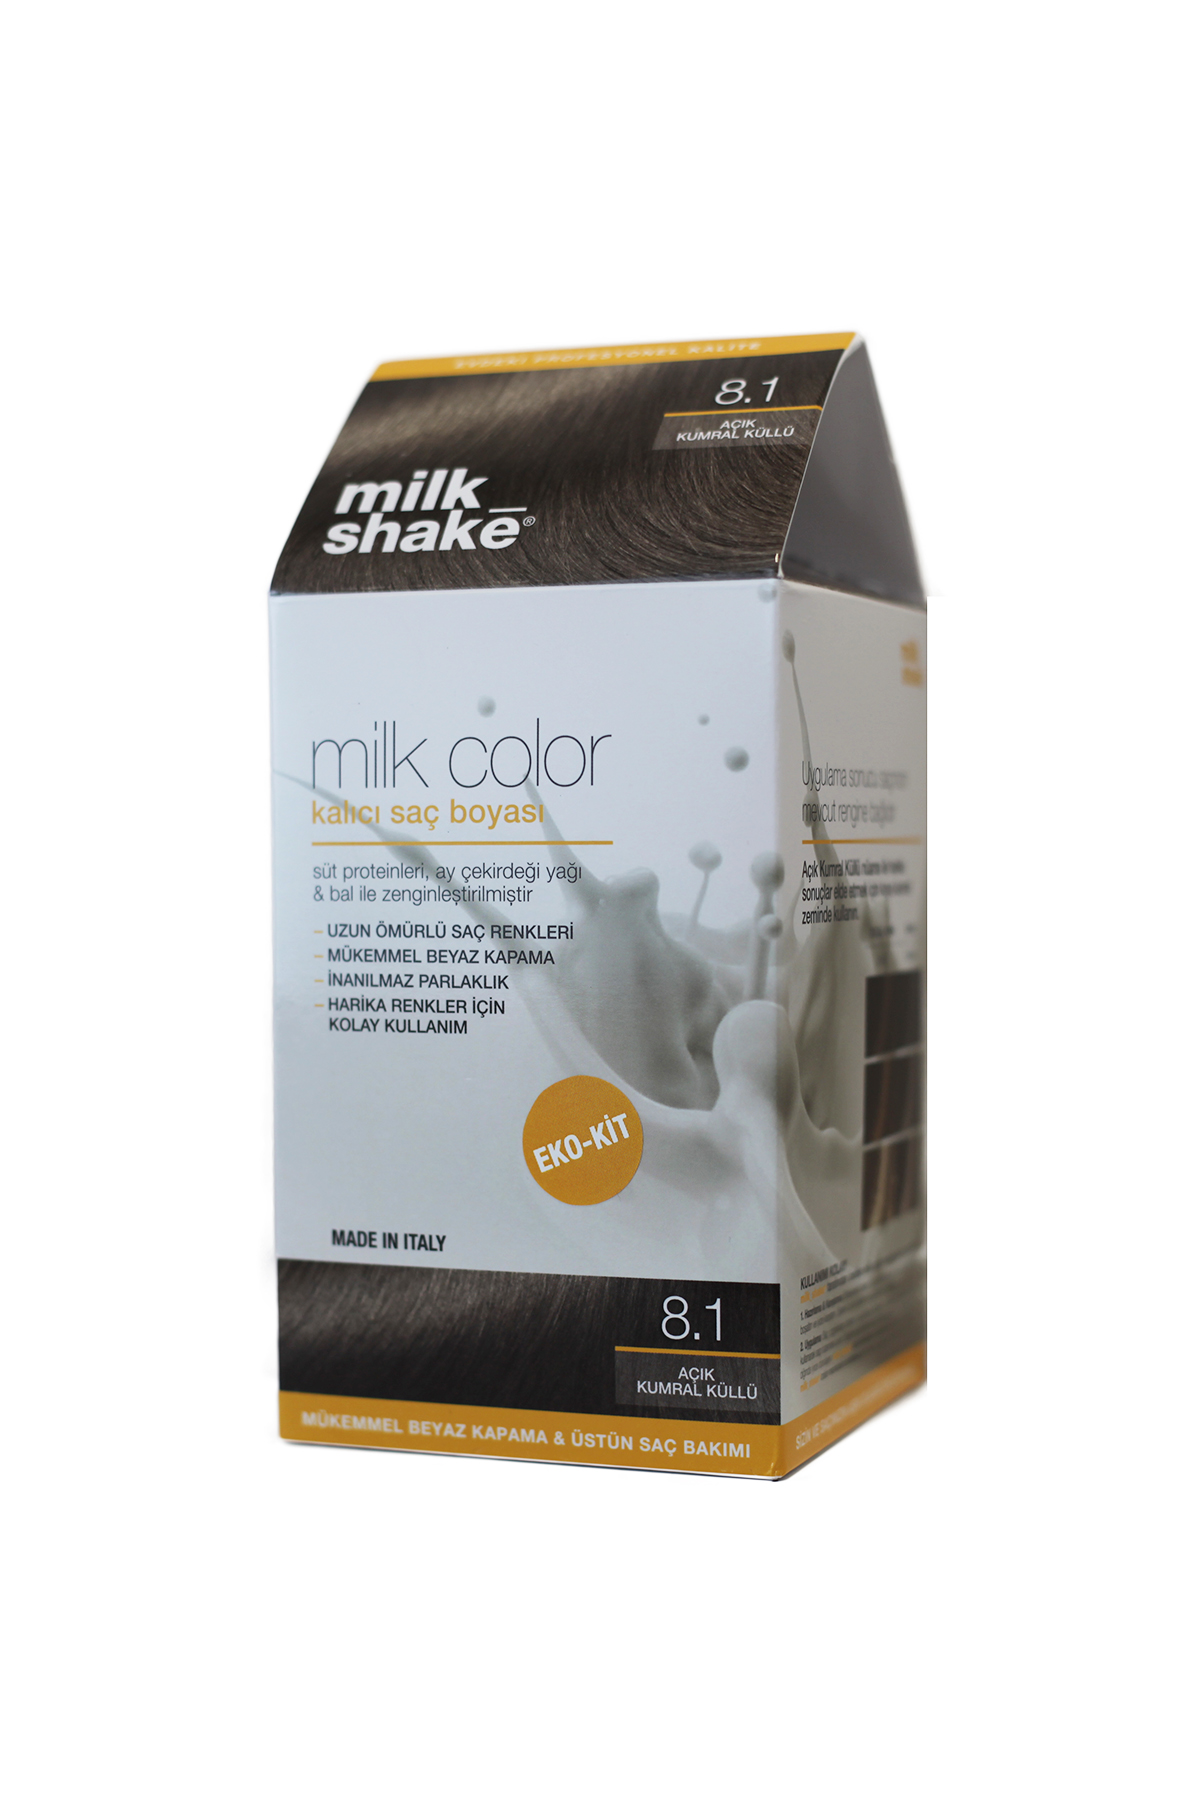 Milk_Shake Milk Color Eko - Kit Açık Kumral Küllü  - 8.1 (Köpüksüz)